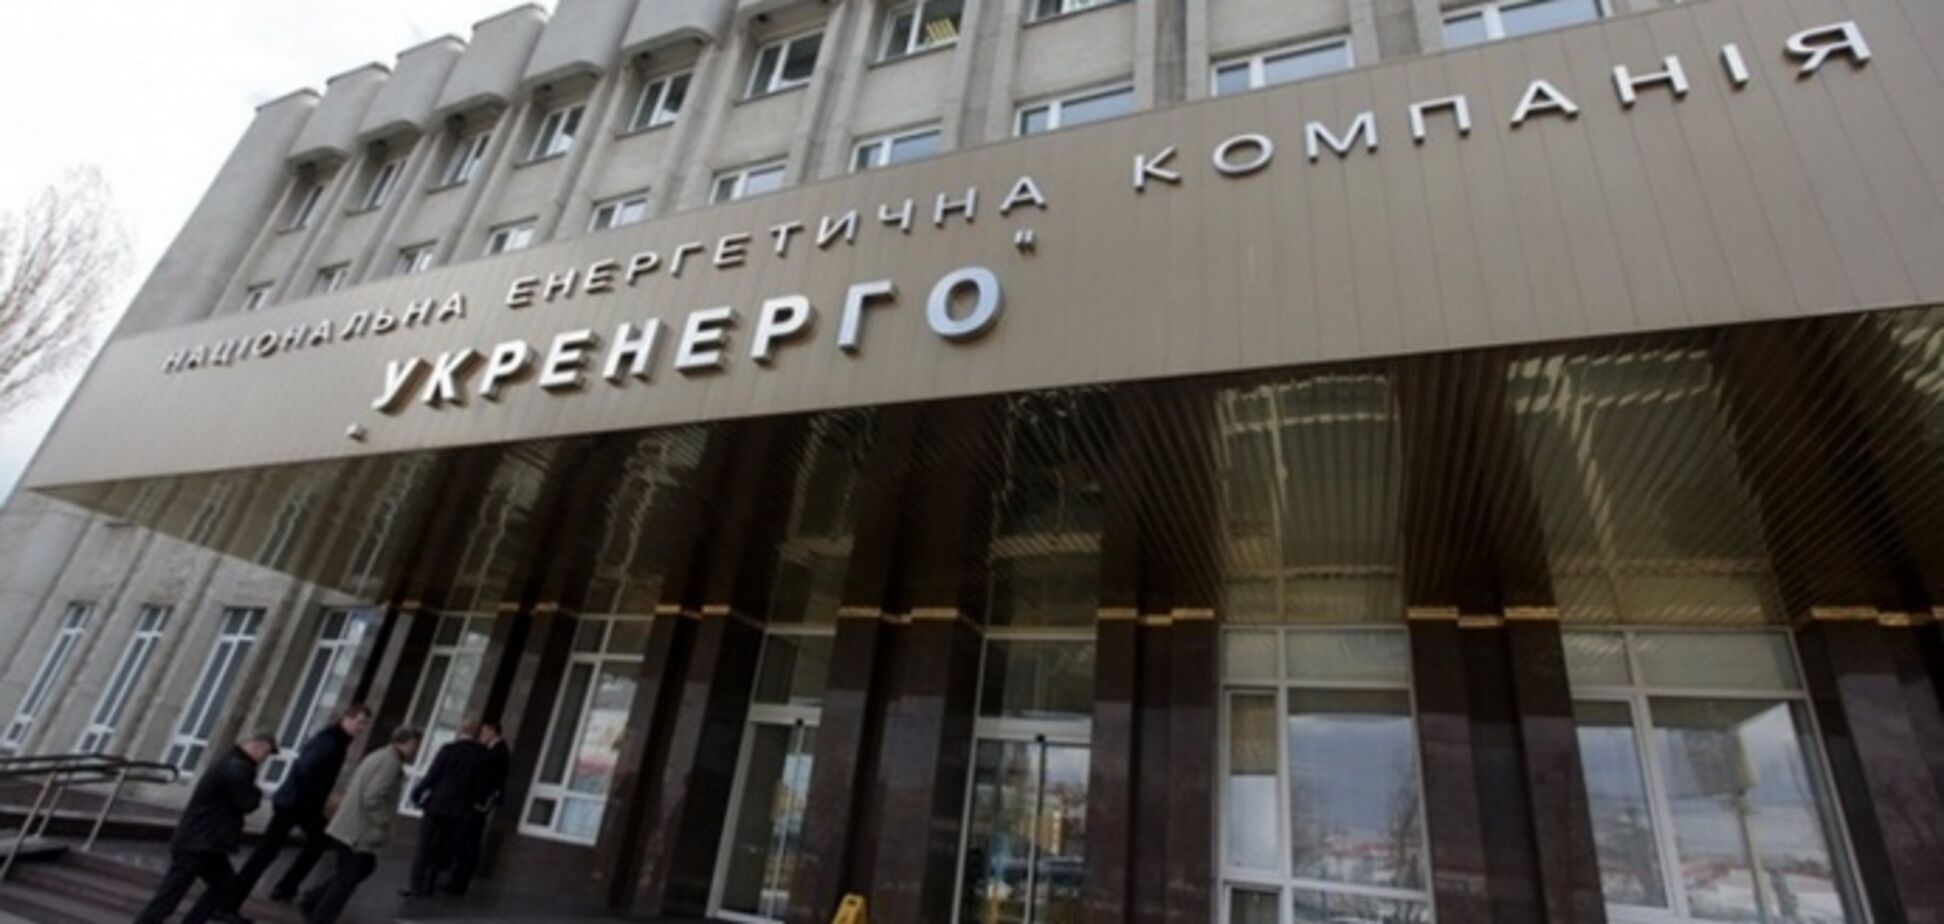 Правление государственного 'Укрэнерго' заработало с начала вторжения РФ 3,5 млн грн, – Лупова